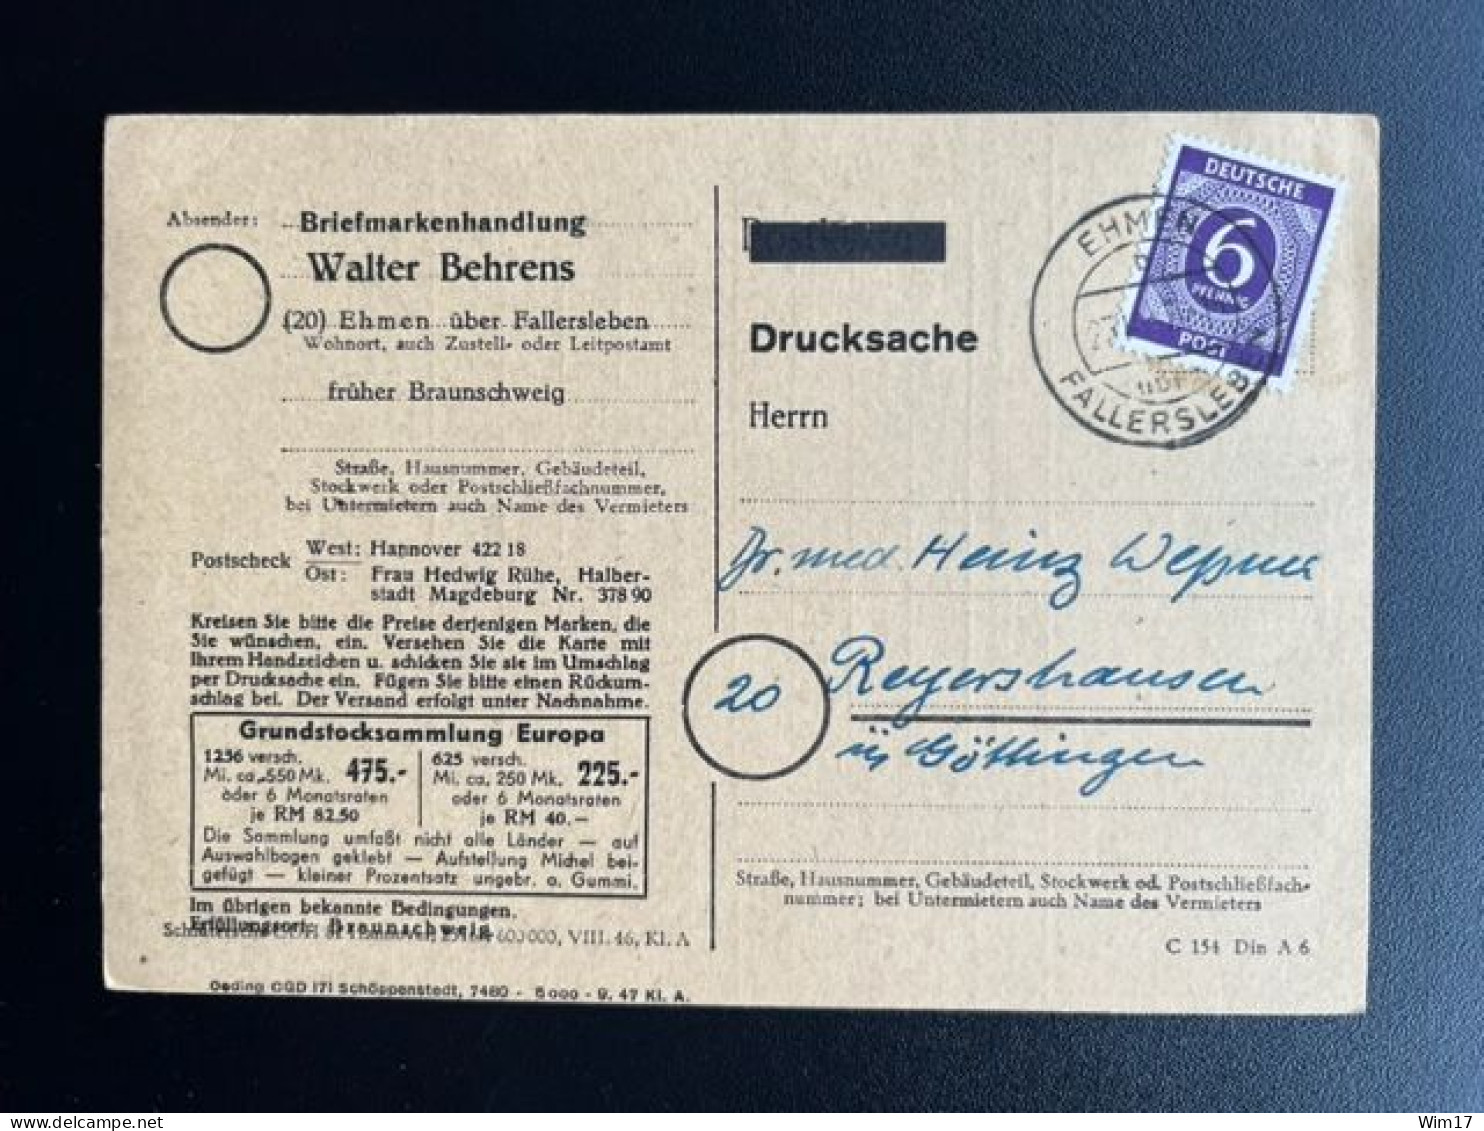 GERMANY 1947 POSTCARD EHMEN TO REYERSHAUSEN 23-10-1947 DUITSLAND DEUTSCHLAND - Entiers Postaux